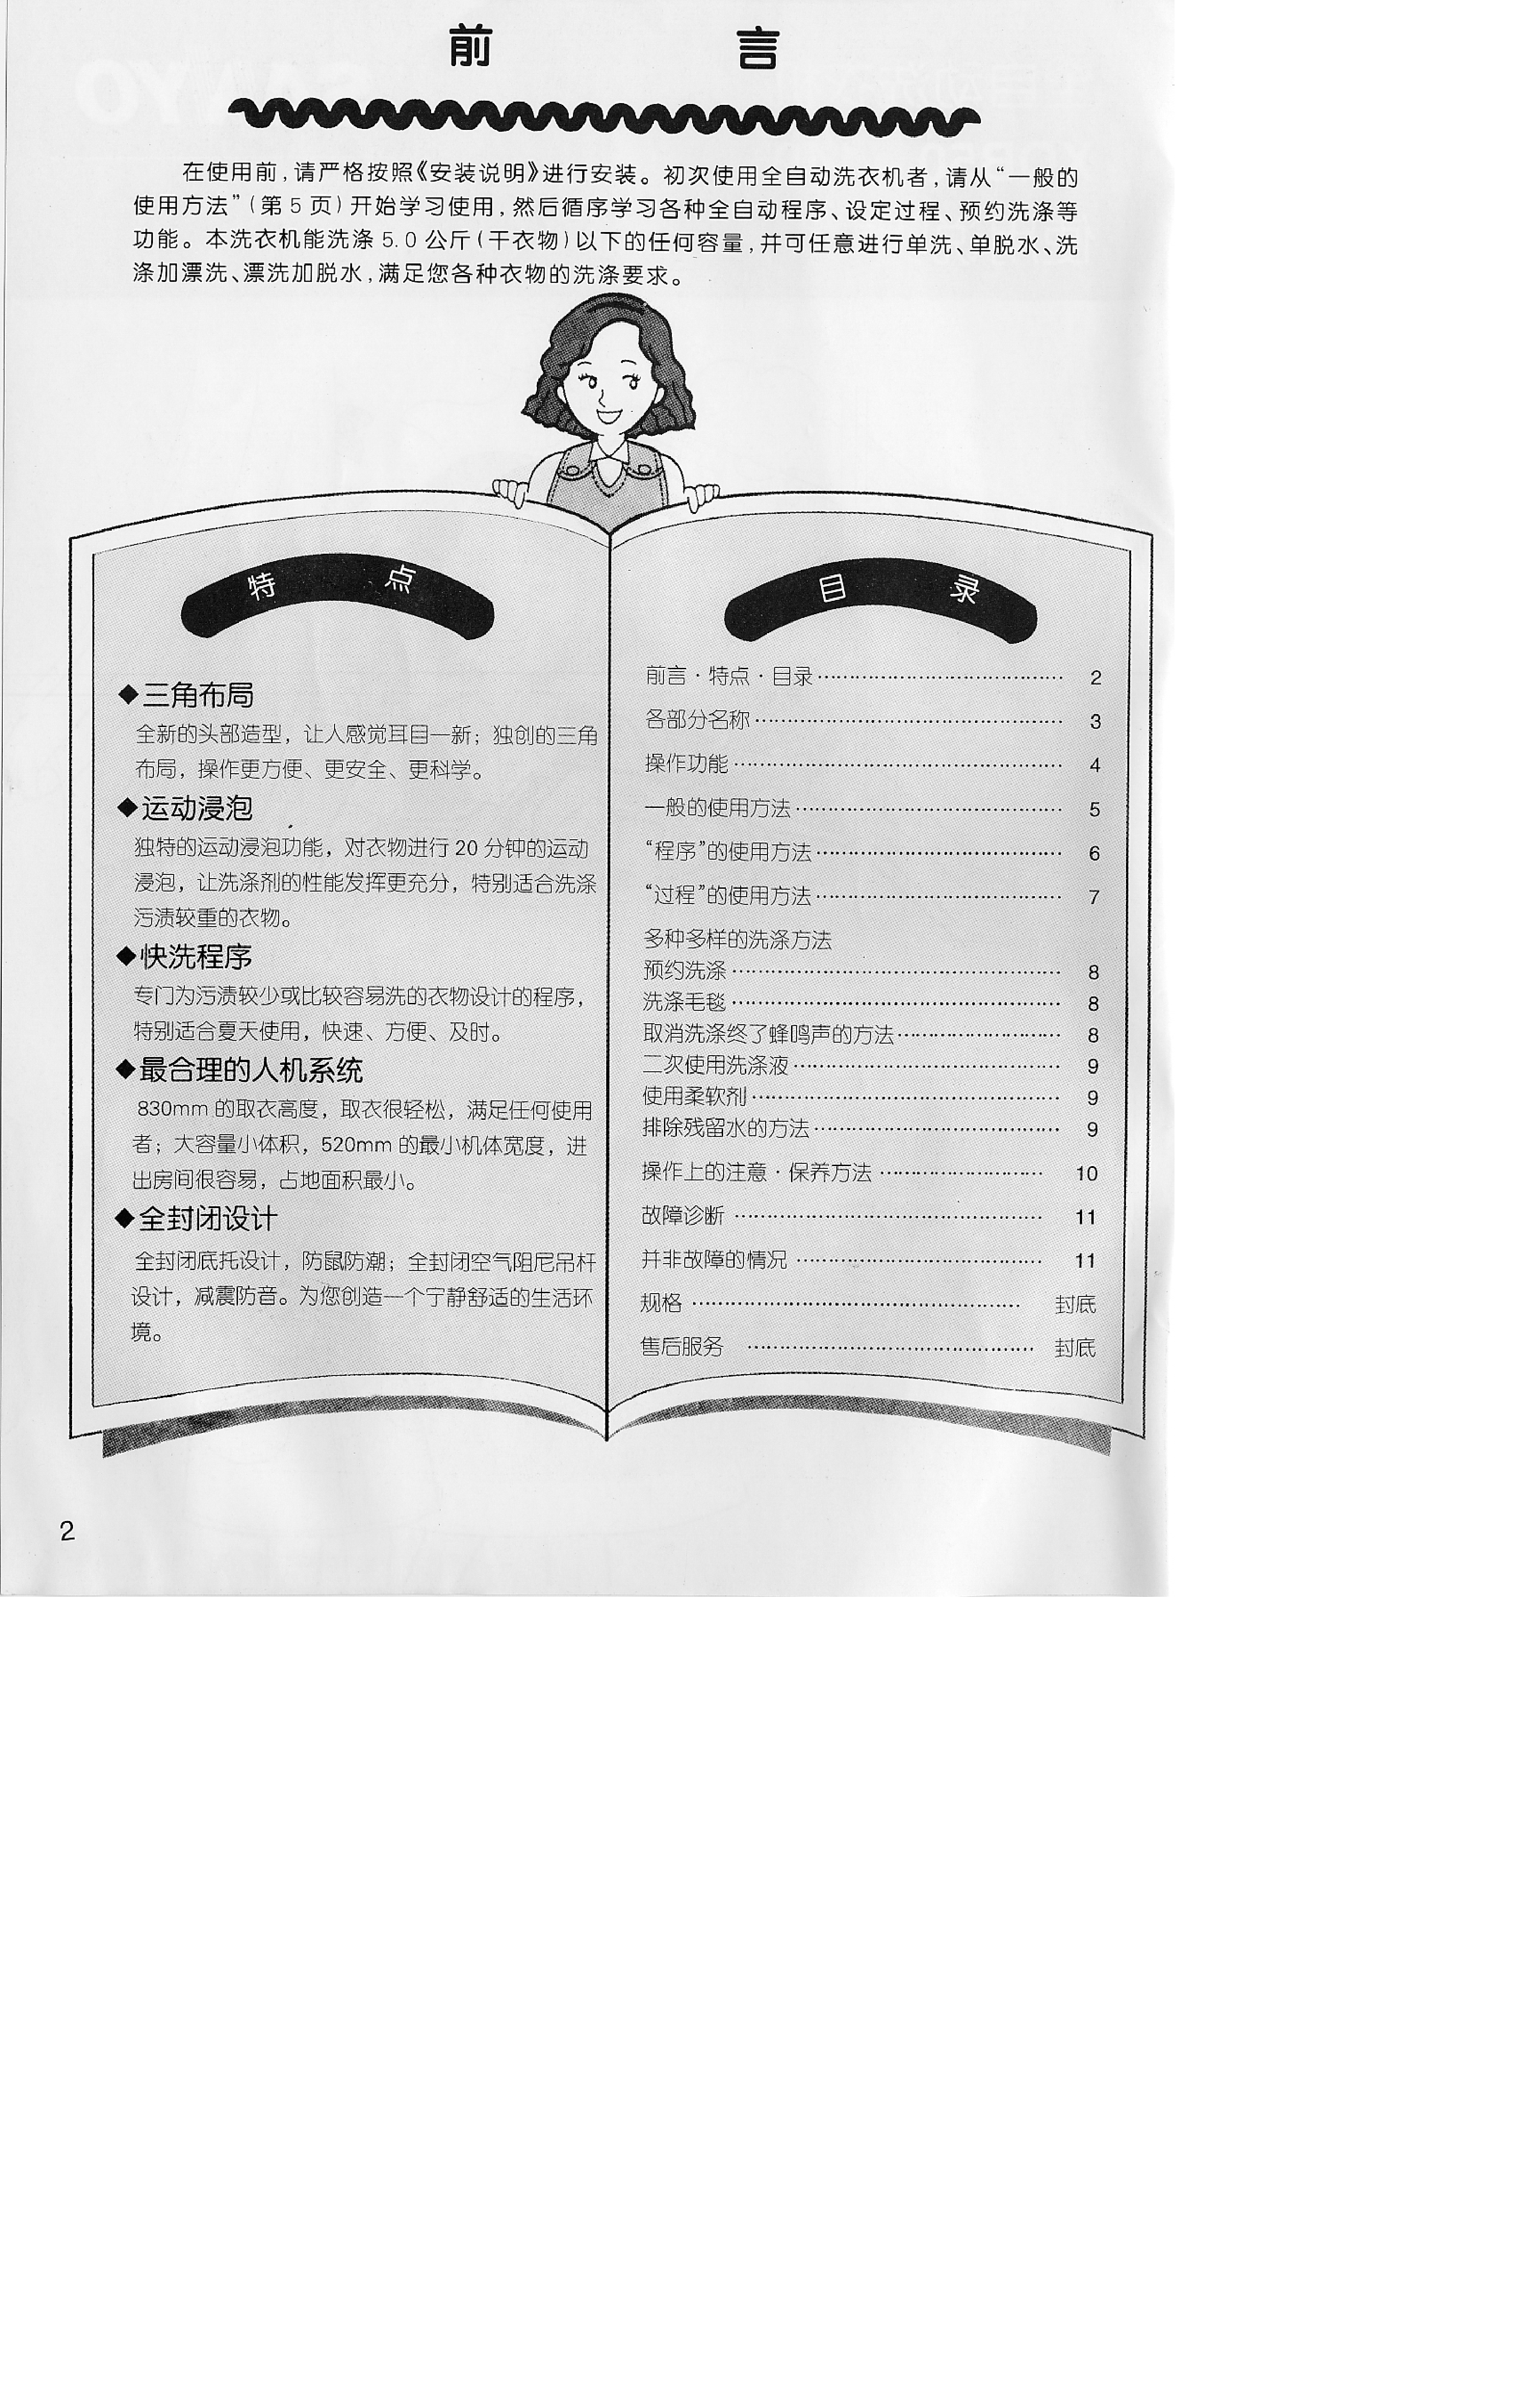 三洋 Sanyo XQB50-149 用户指南 第1页